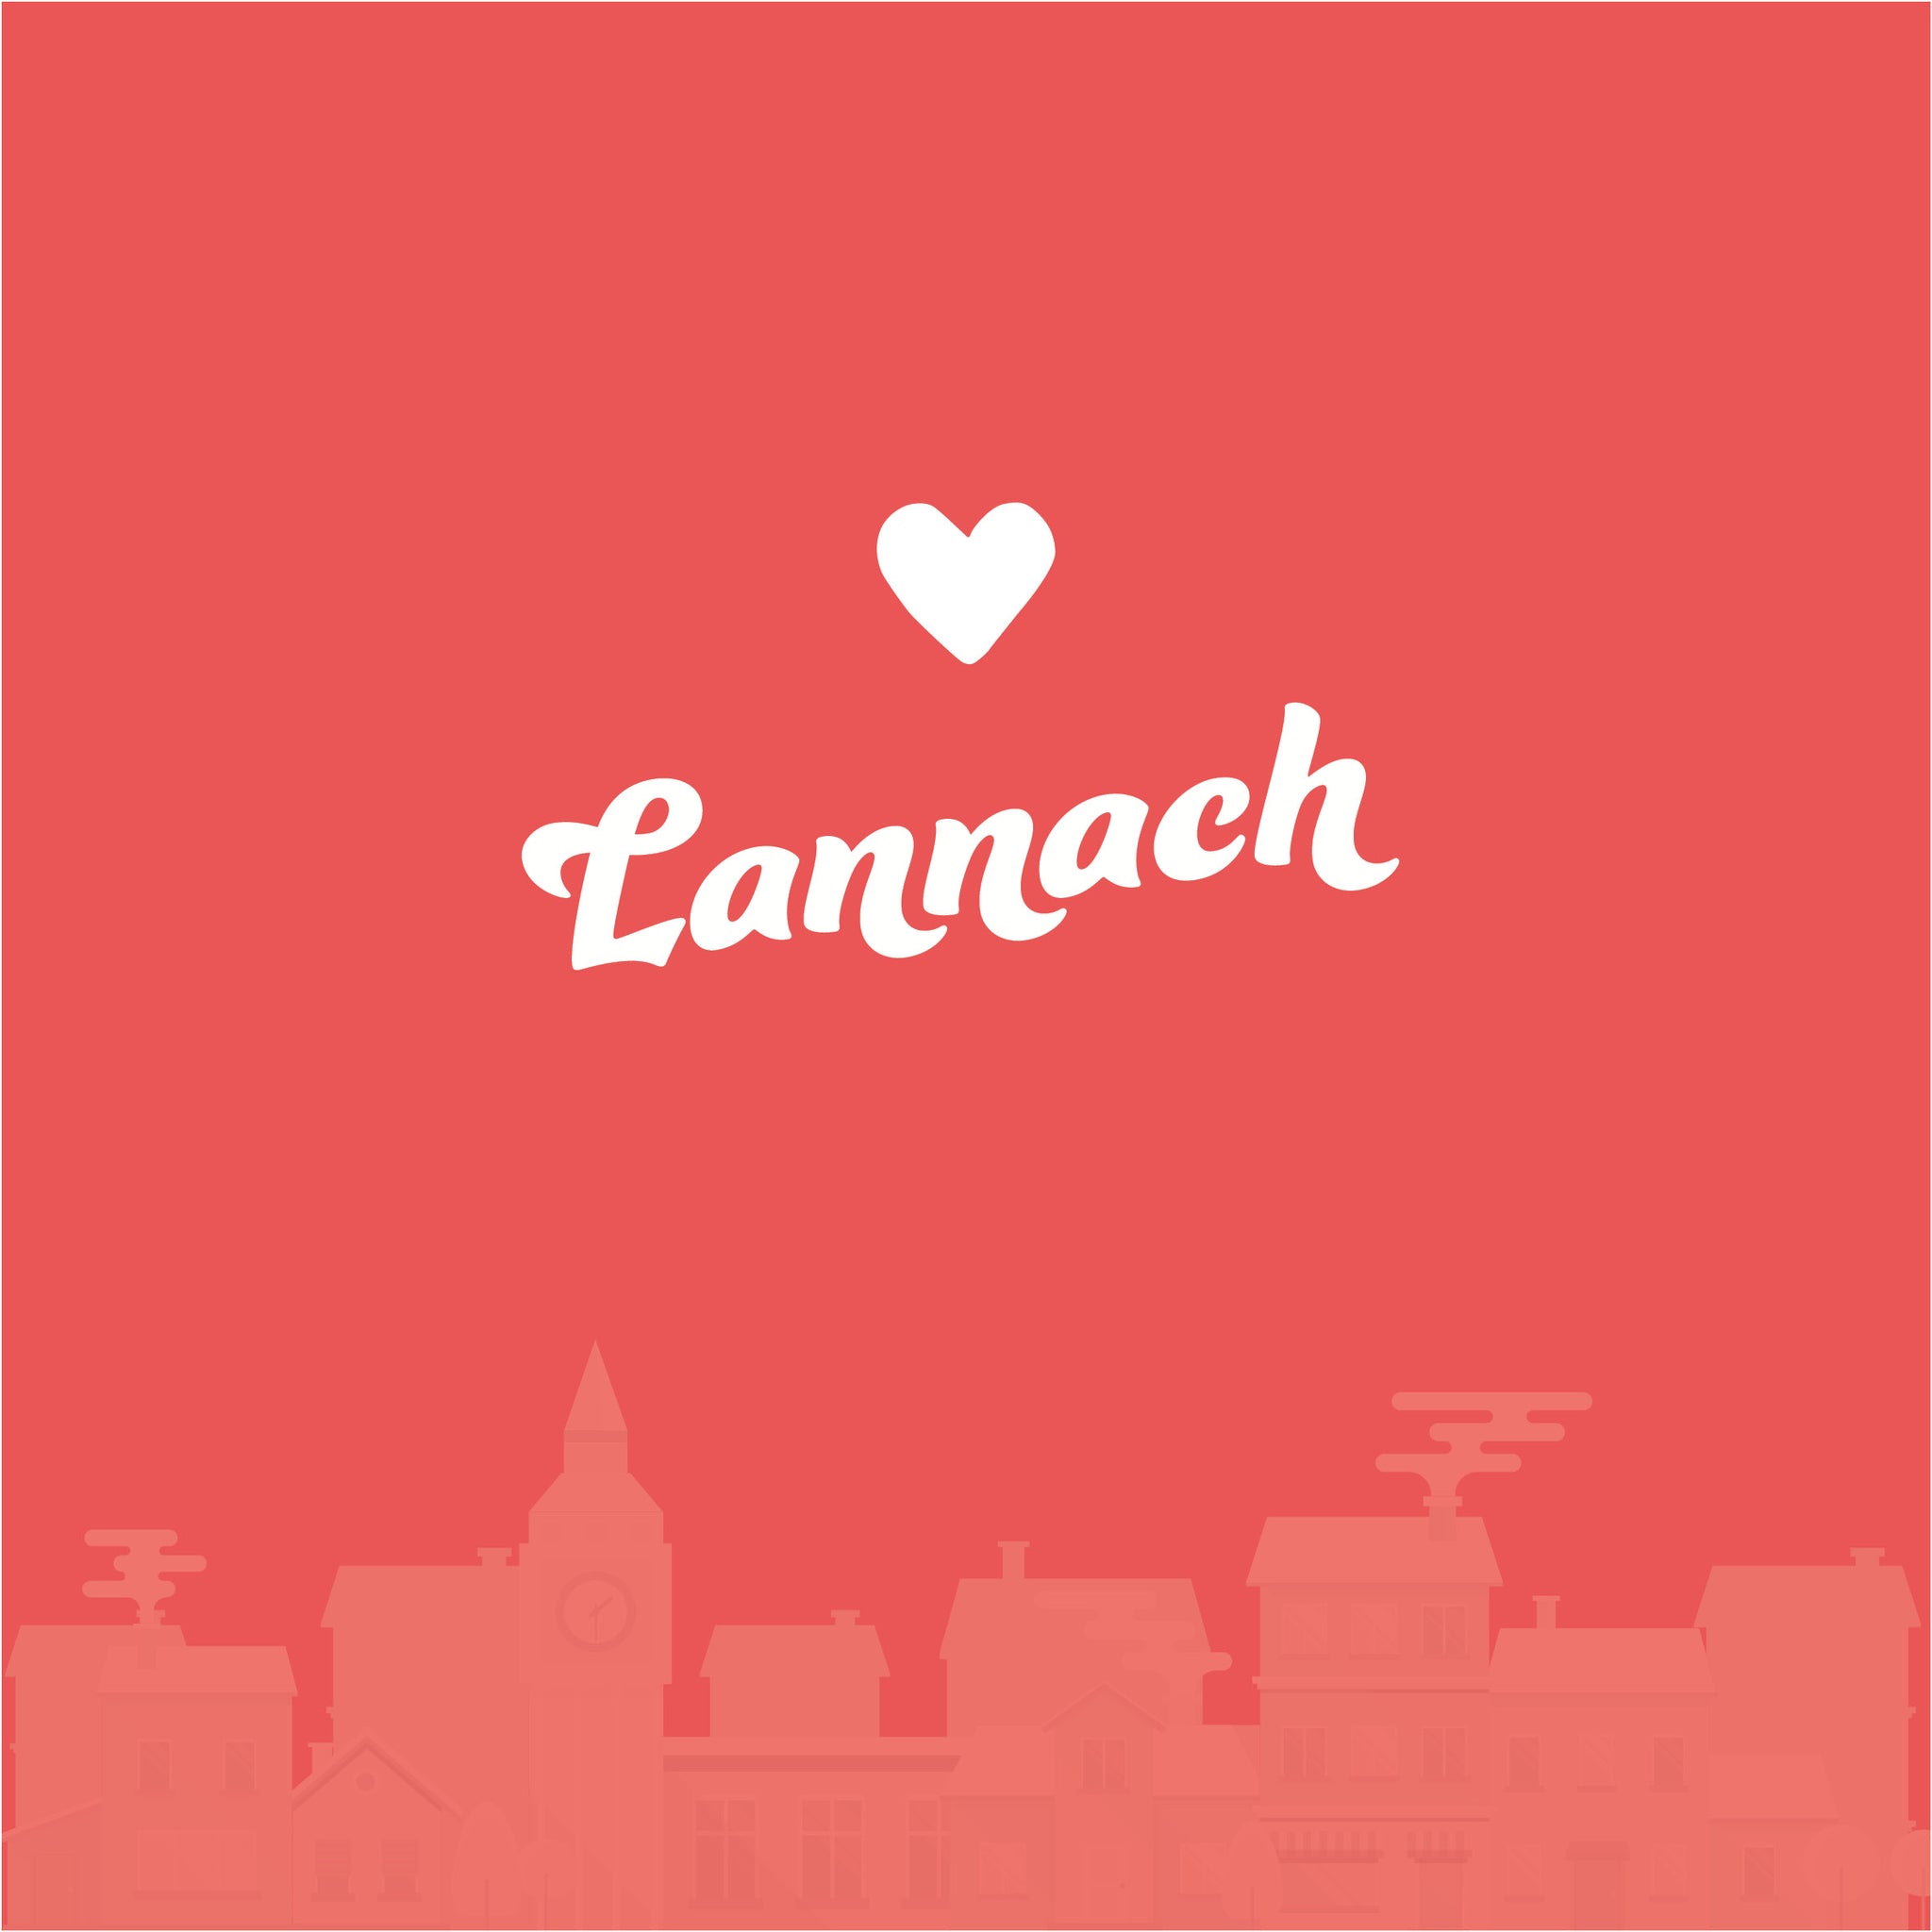 Lannach